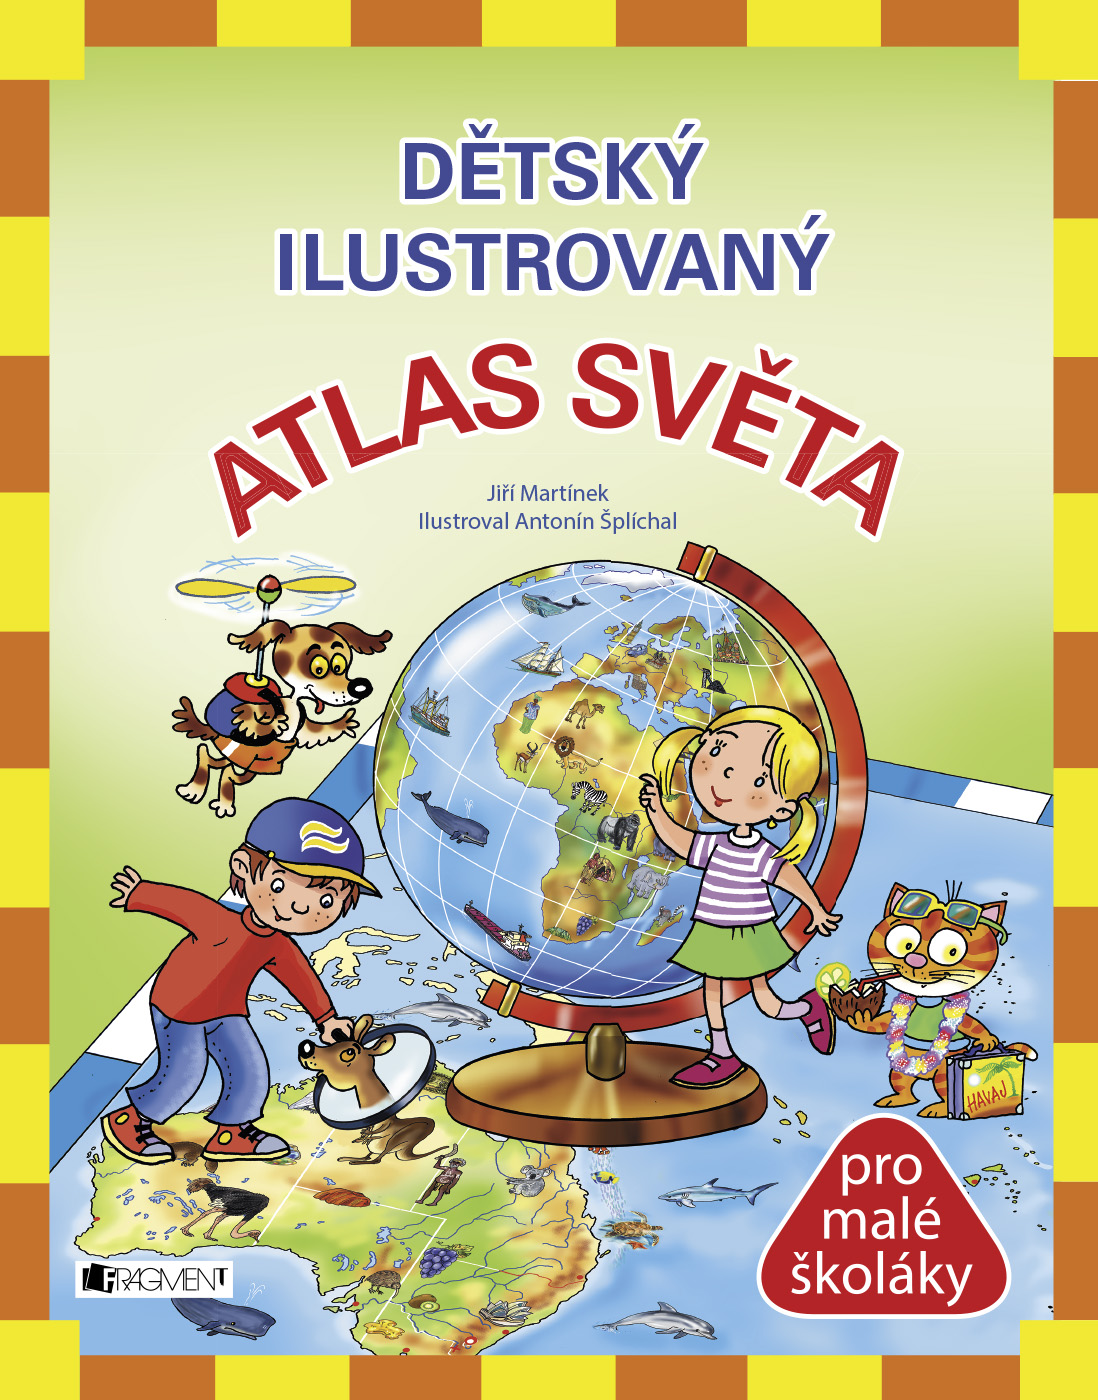 E-kniha Dětský ilustrovaný ATLAS SVĚTA - Jiří Martínek RNDr.